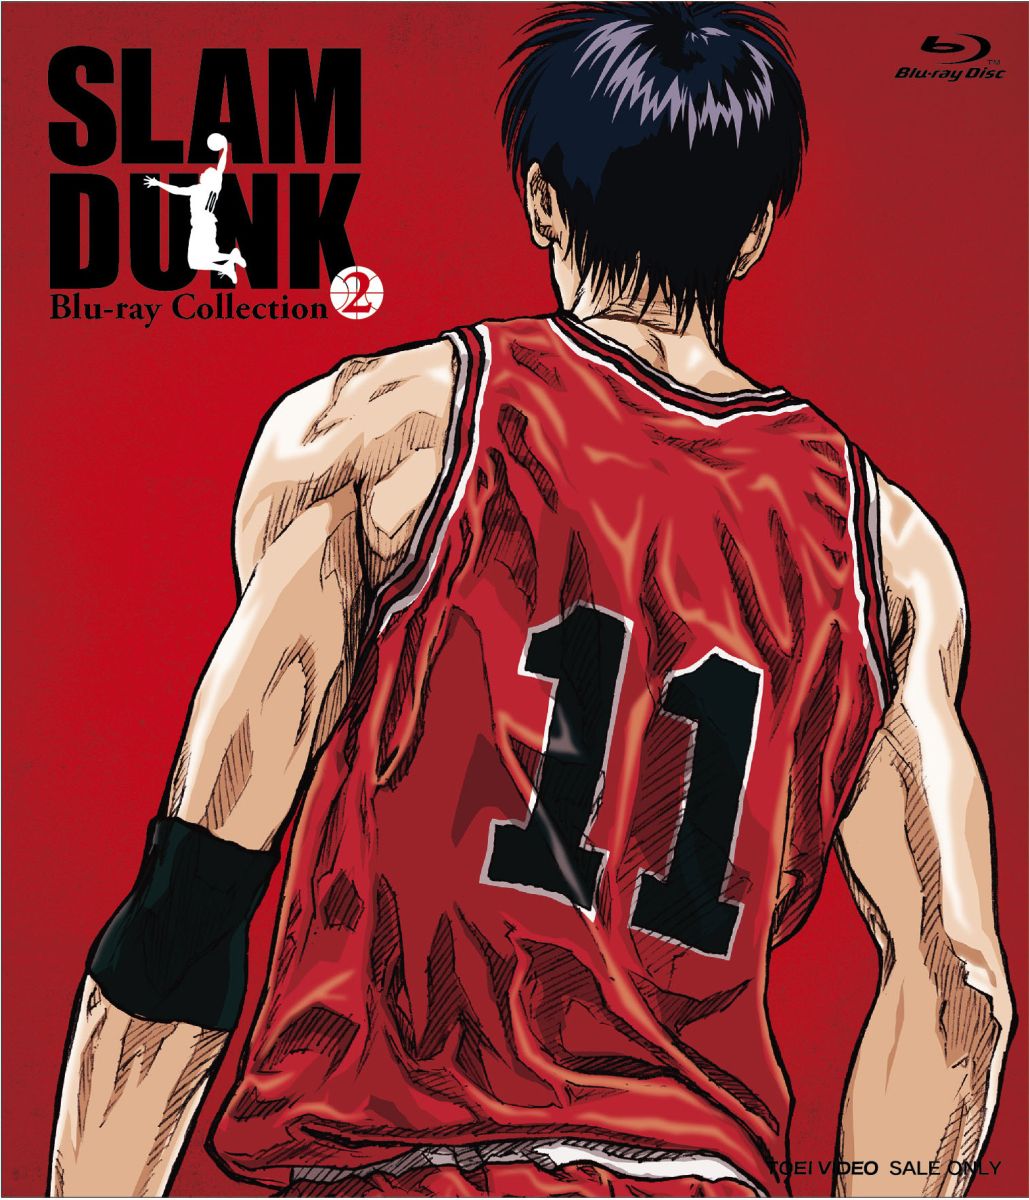 楽天ブックス: SLAM DUNK Blu-ray Collection 2【Blu-ray】 - 草尾毅 